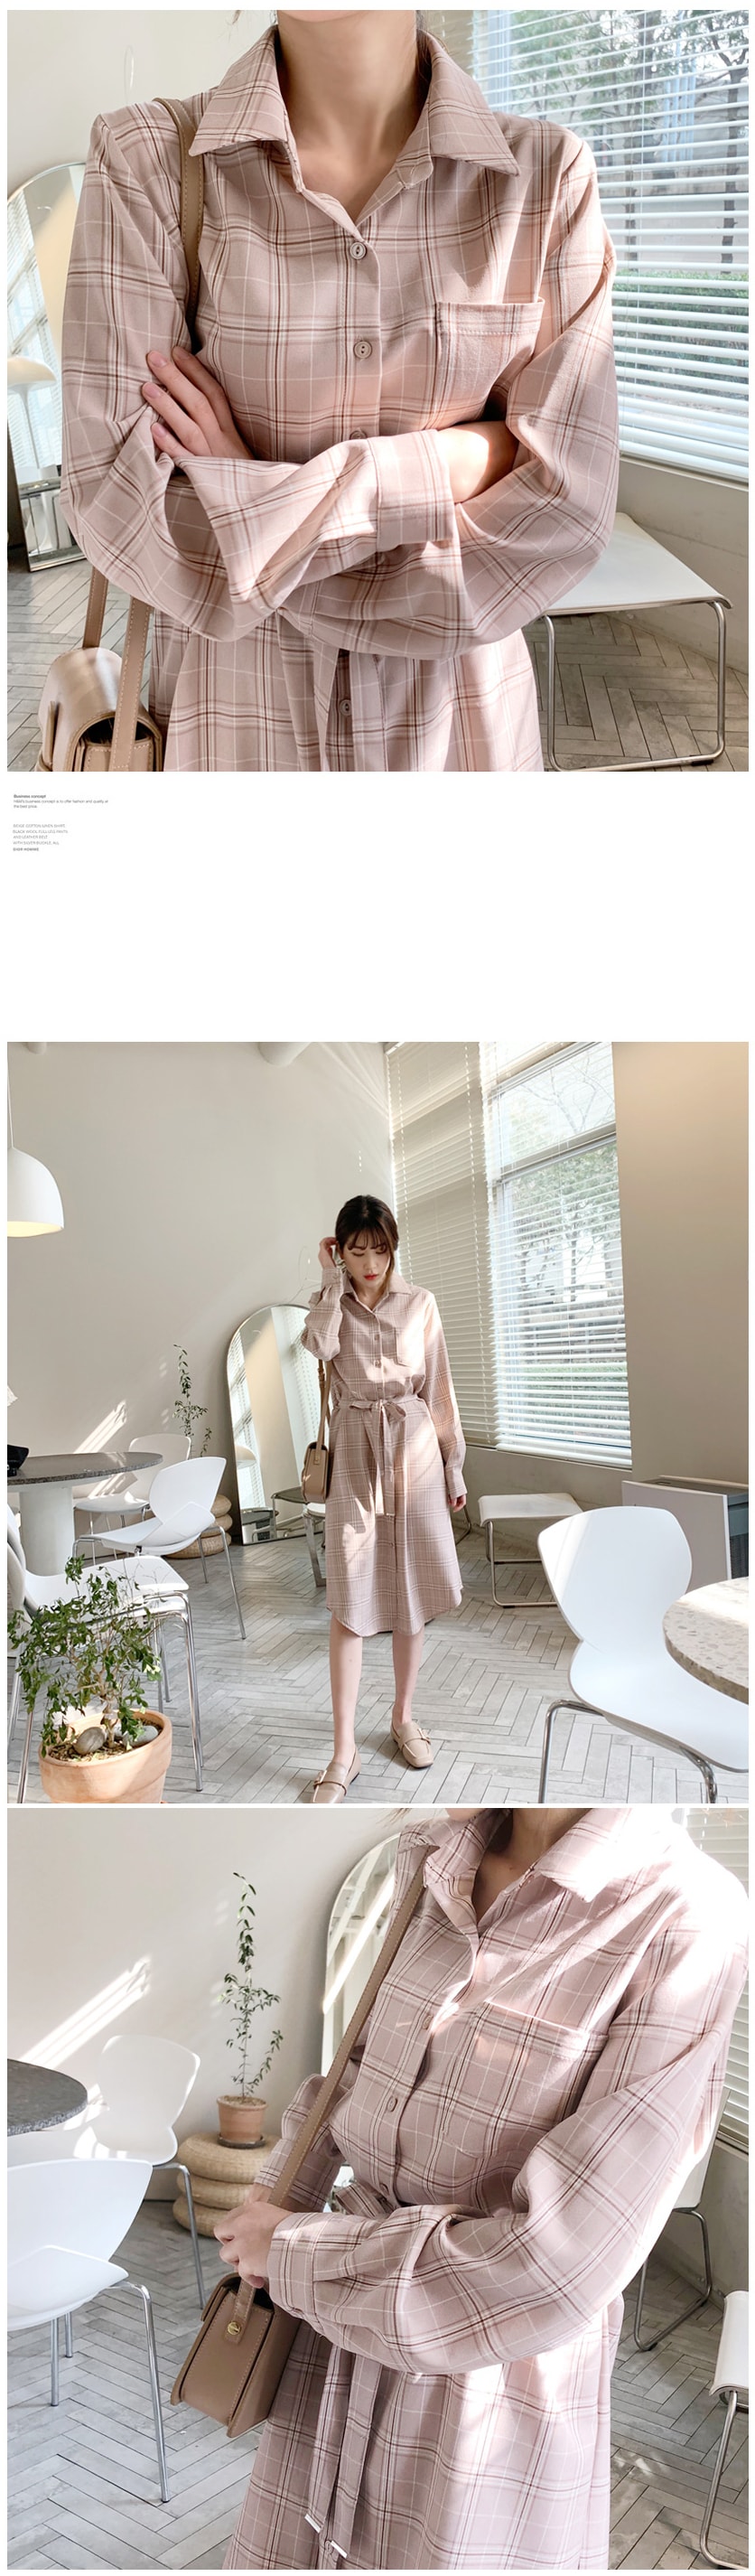 MIMIDIDI dress pink free size